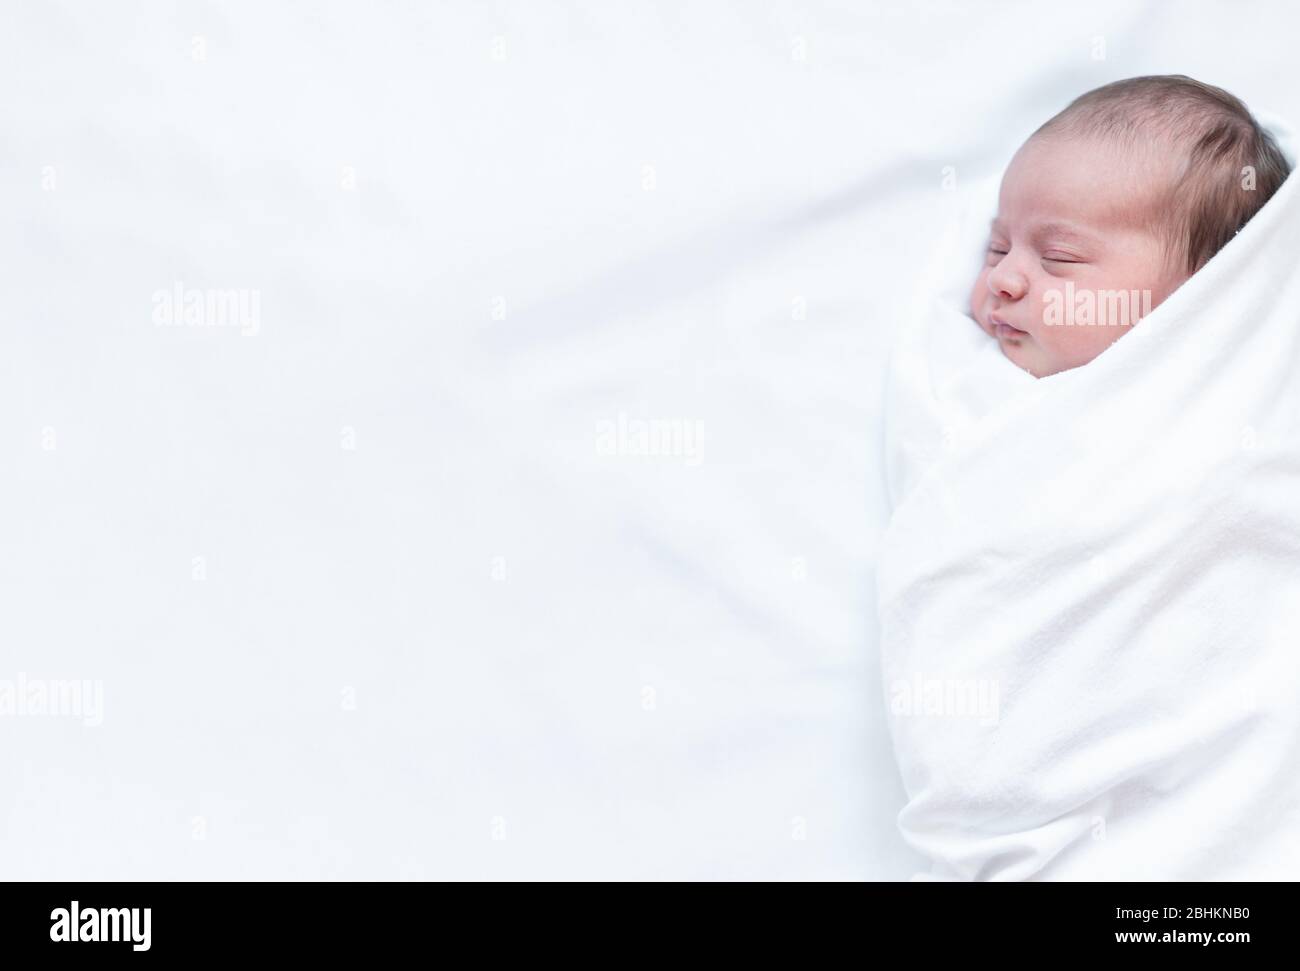 petite enfance, enfance, famille, soins, médecine, sommeil, concept de santé - bannière portrait de bébé nouveau-né enveloppé dans le couches sur fond blanc, copier spase Banque D'Images